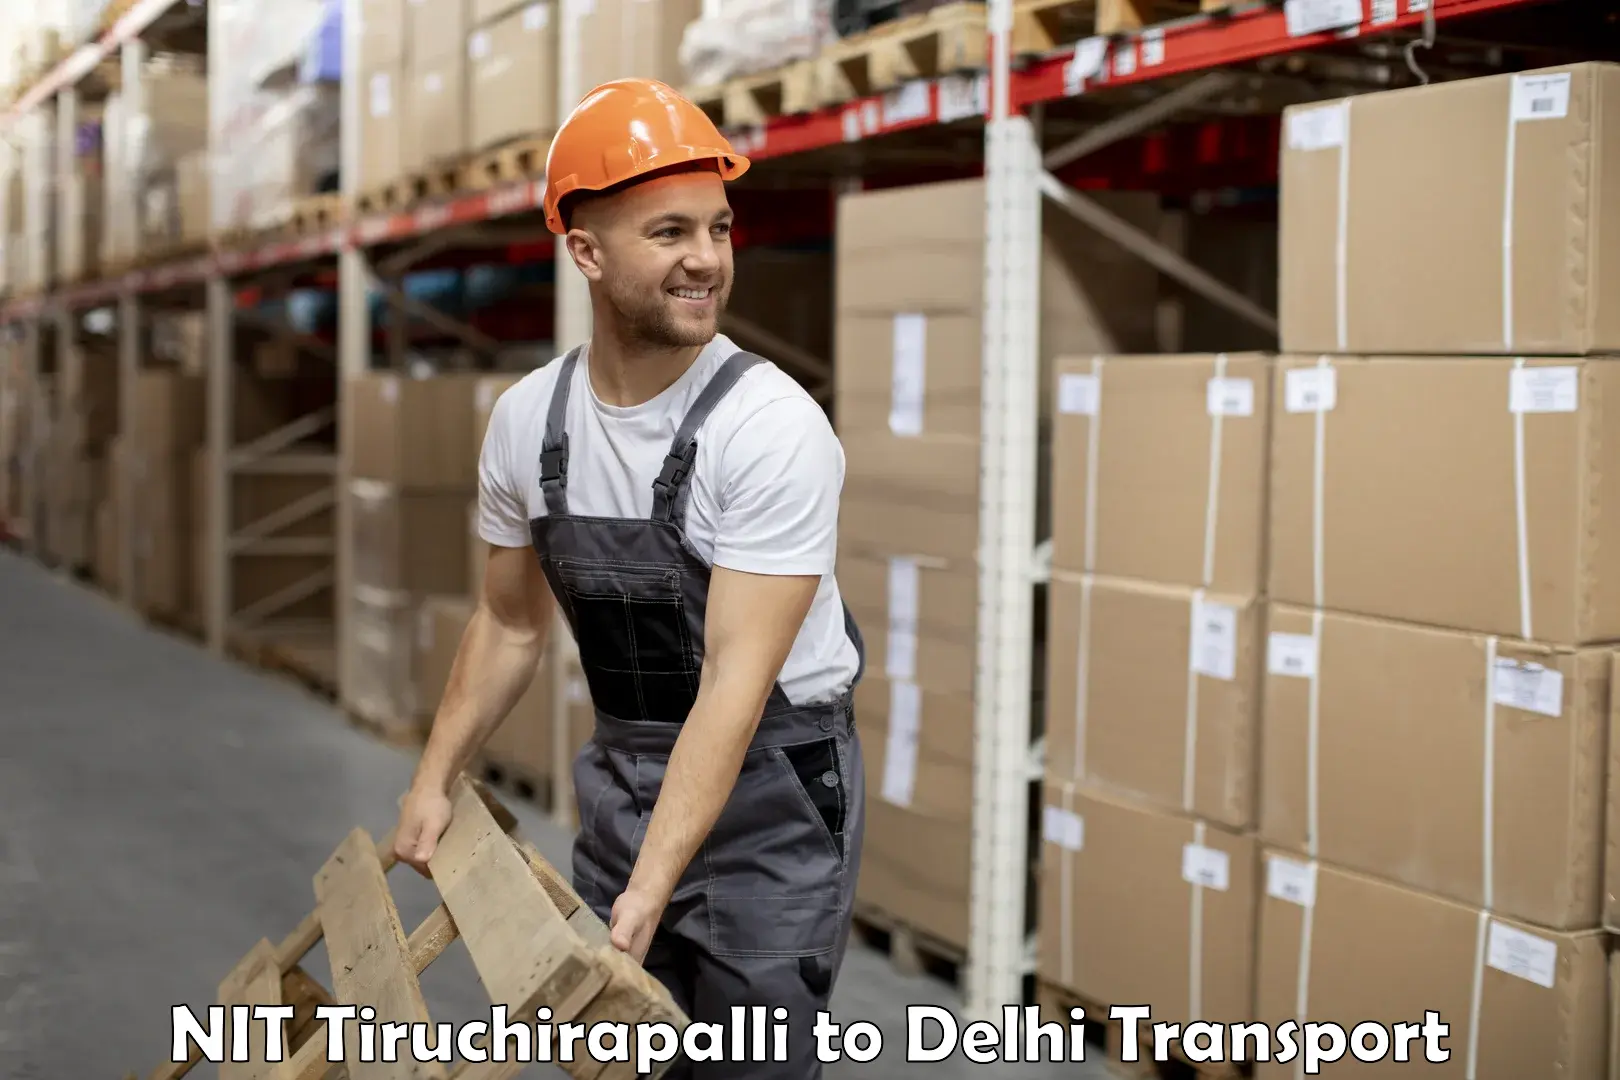 Daily transport service NIT Tiruchirapalli to Guru Gobind Singh Indraprastha University New Delhi